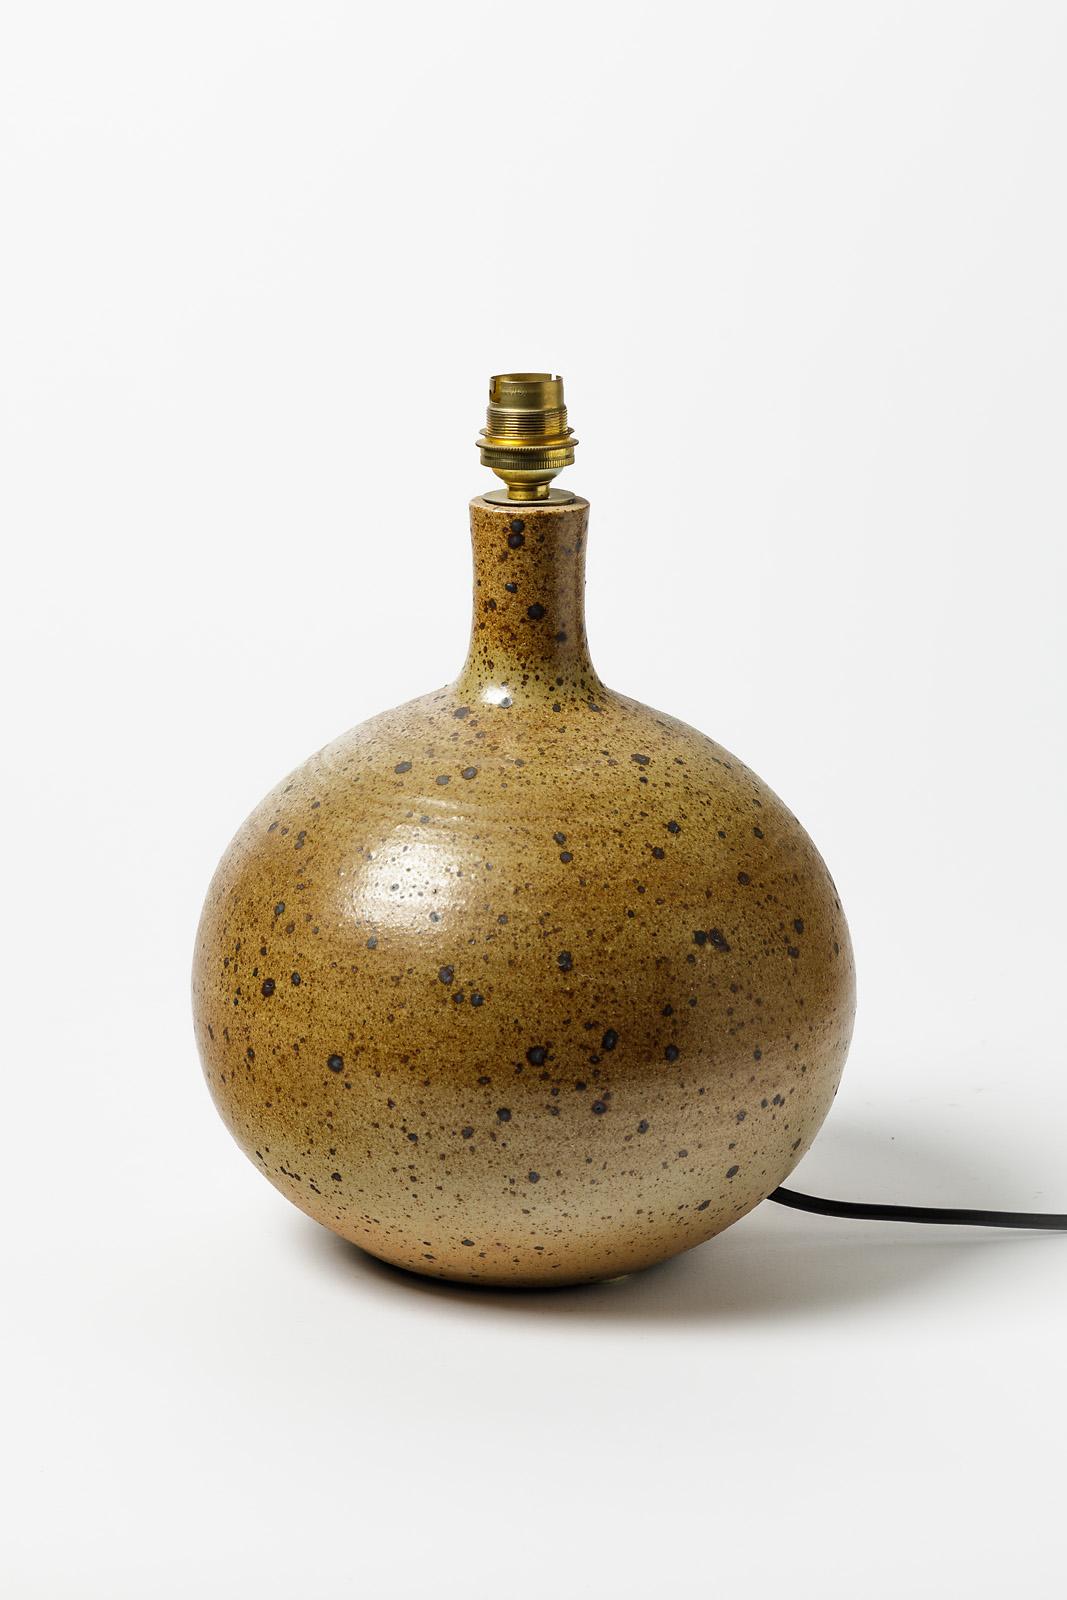 French La Borne Brown Stoneware Ceramic Table Lamp 20th Century Design 1970 For Sale